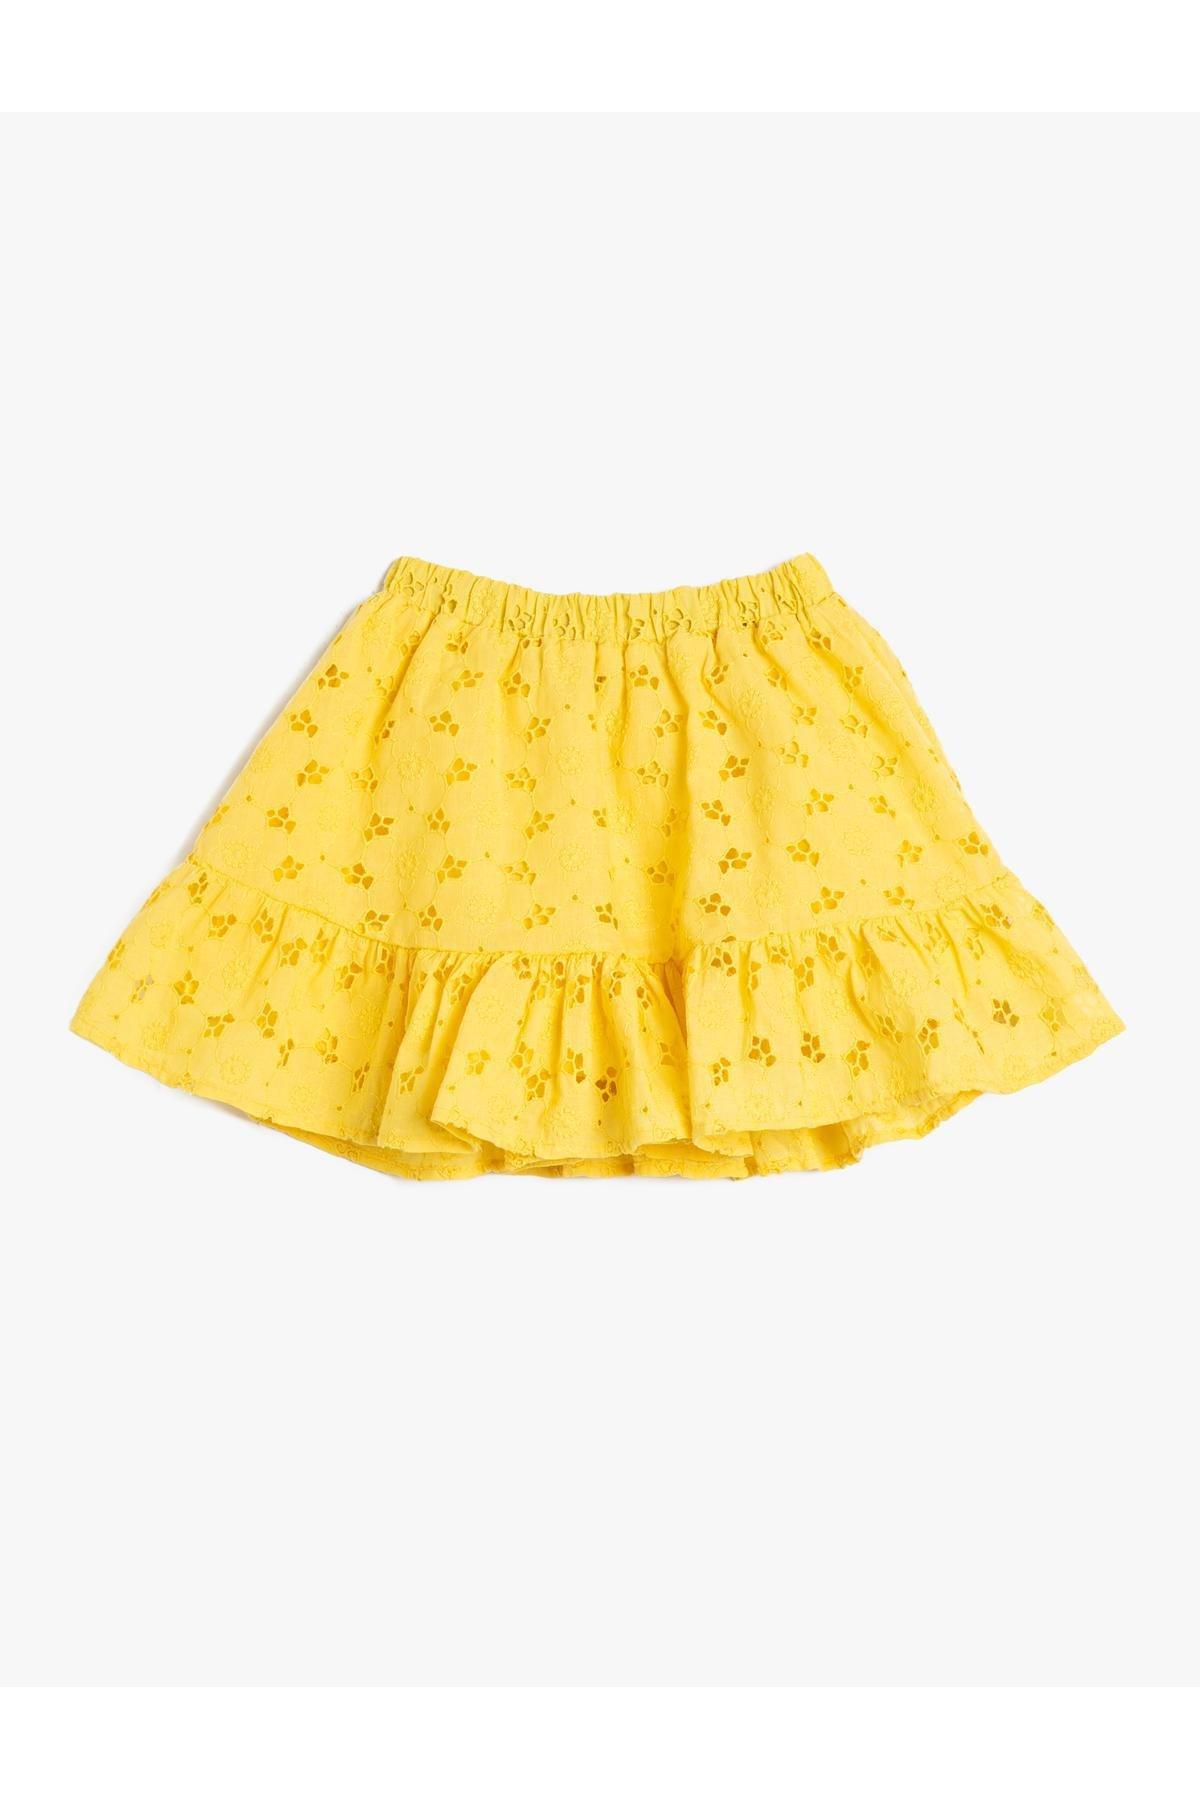 Koton - Yellow Elastic Waist Ruffled Midi Skirt